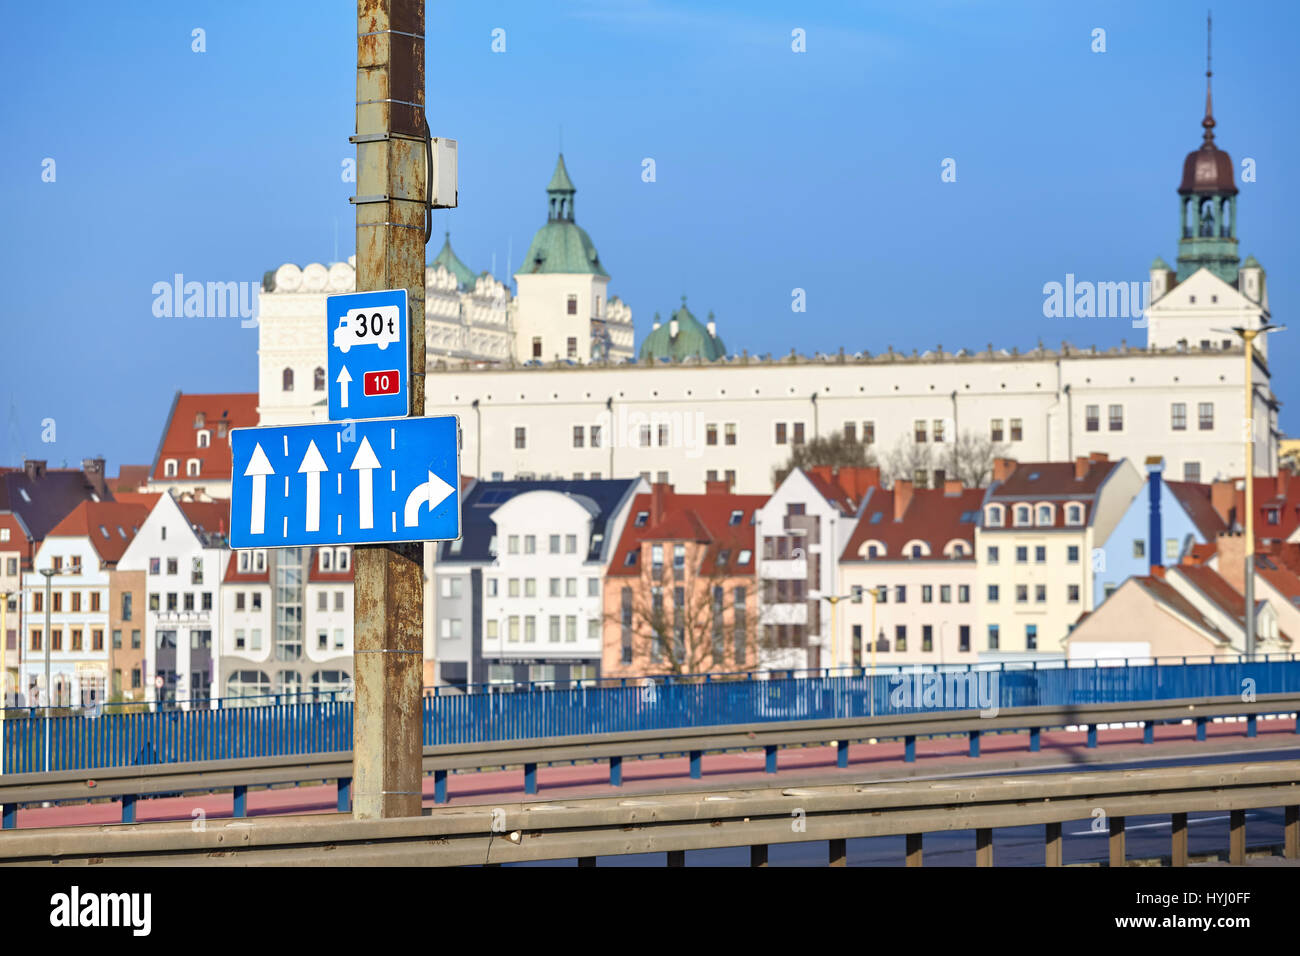 Indicazioni stradali per il castello percorso, principale città di Szczecin ingresso autostrada con la città vecchia in distanza, Polonia. Foto Stock